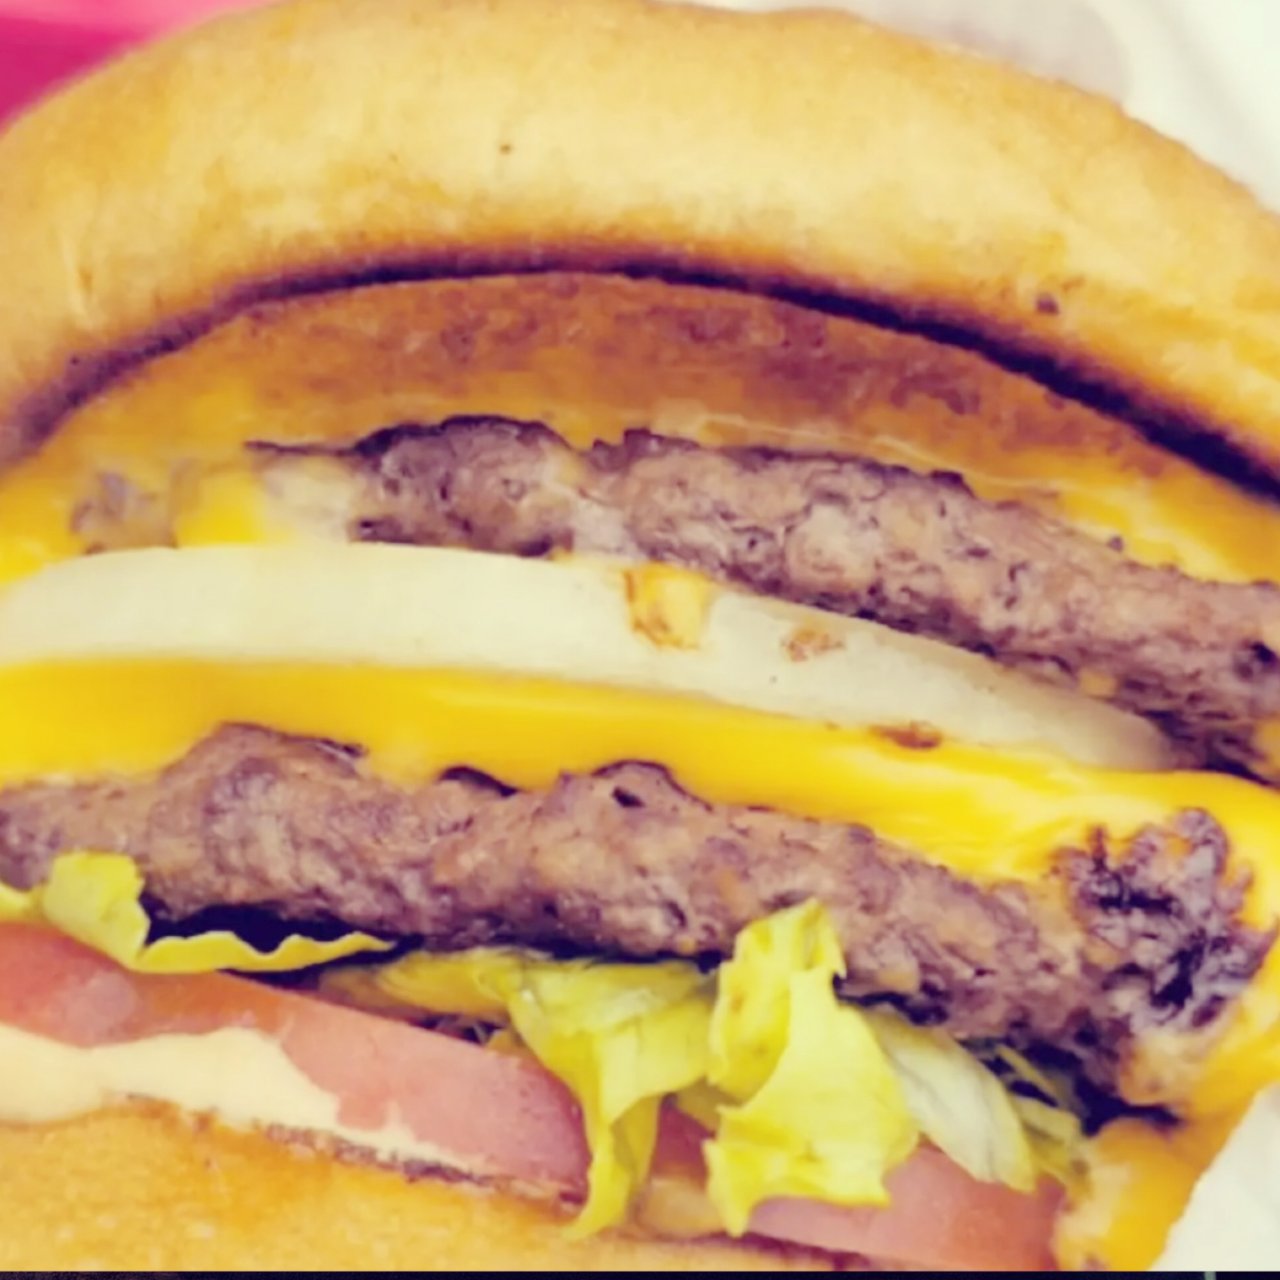 晒炫饭—麦当劳买一送一汉堡加免费薯条。...